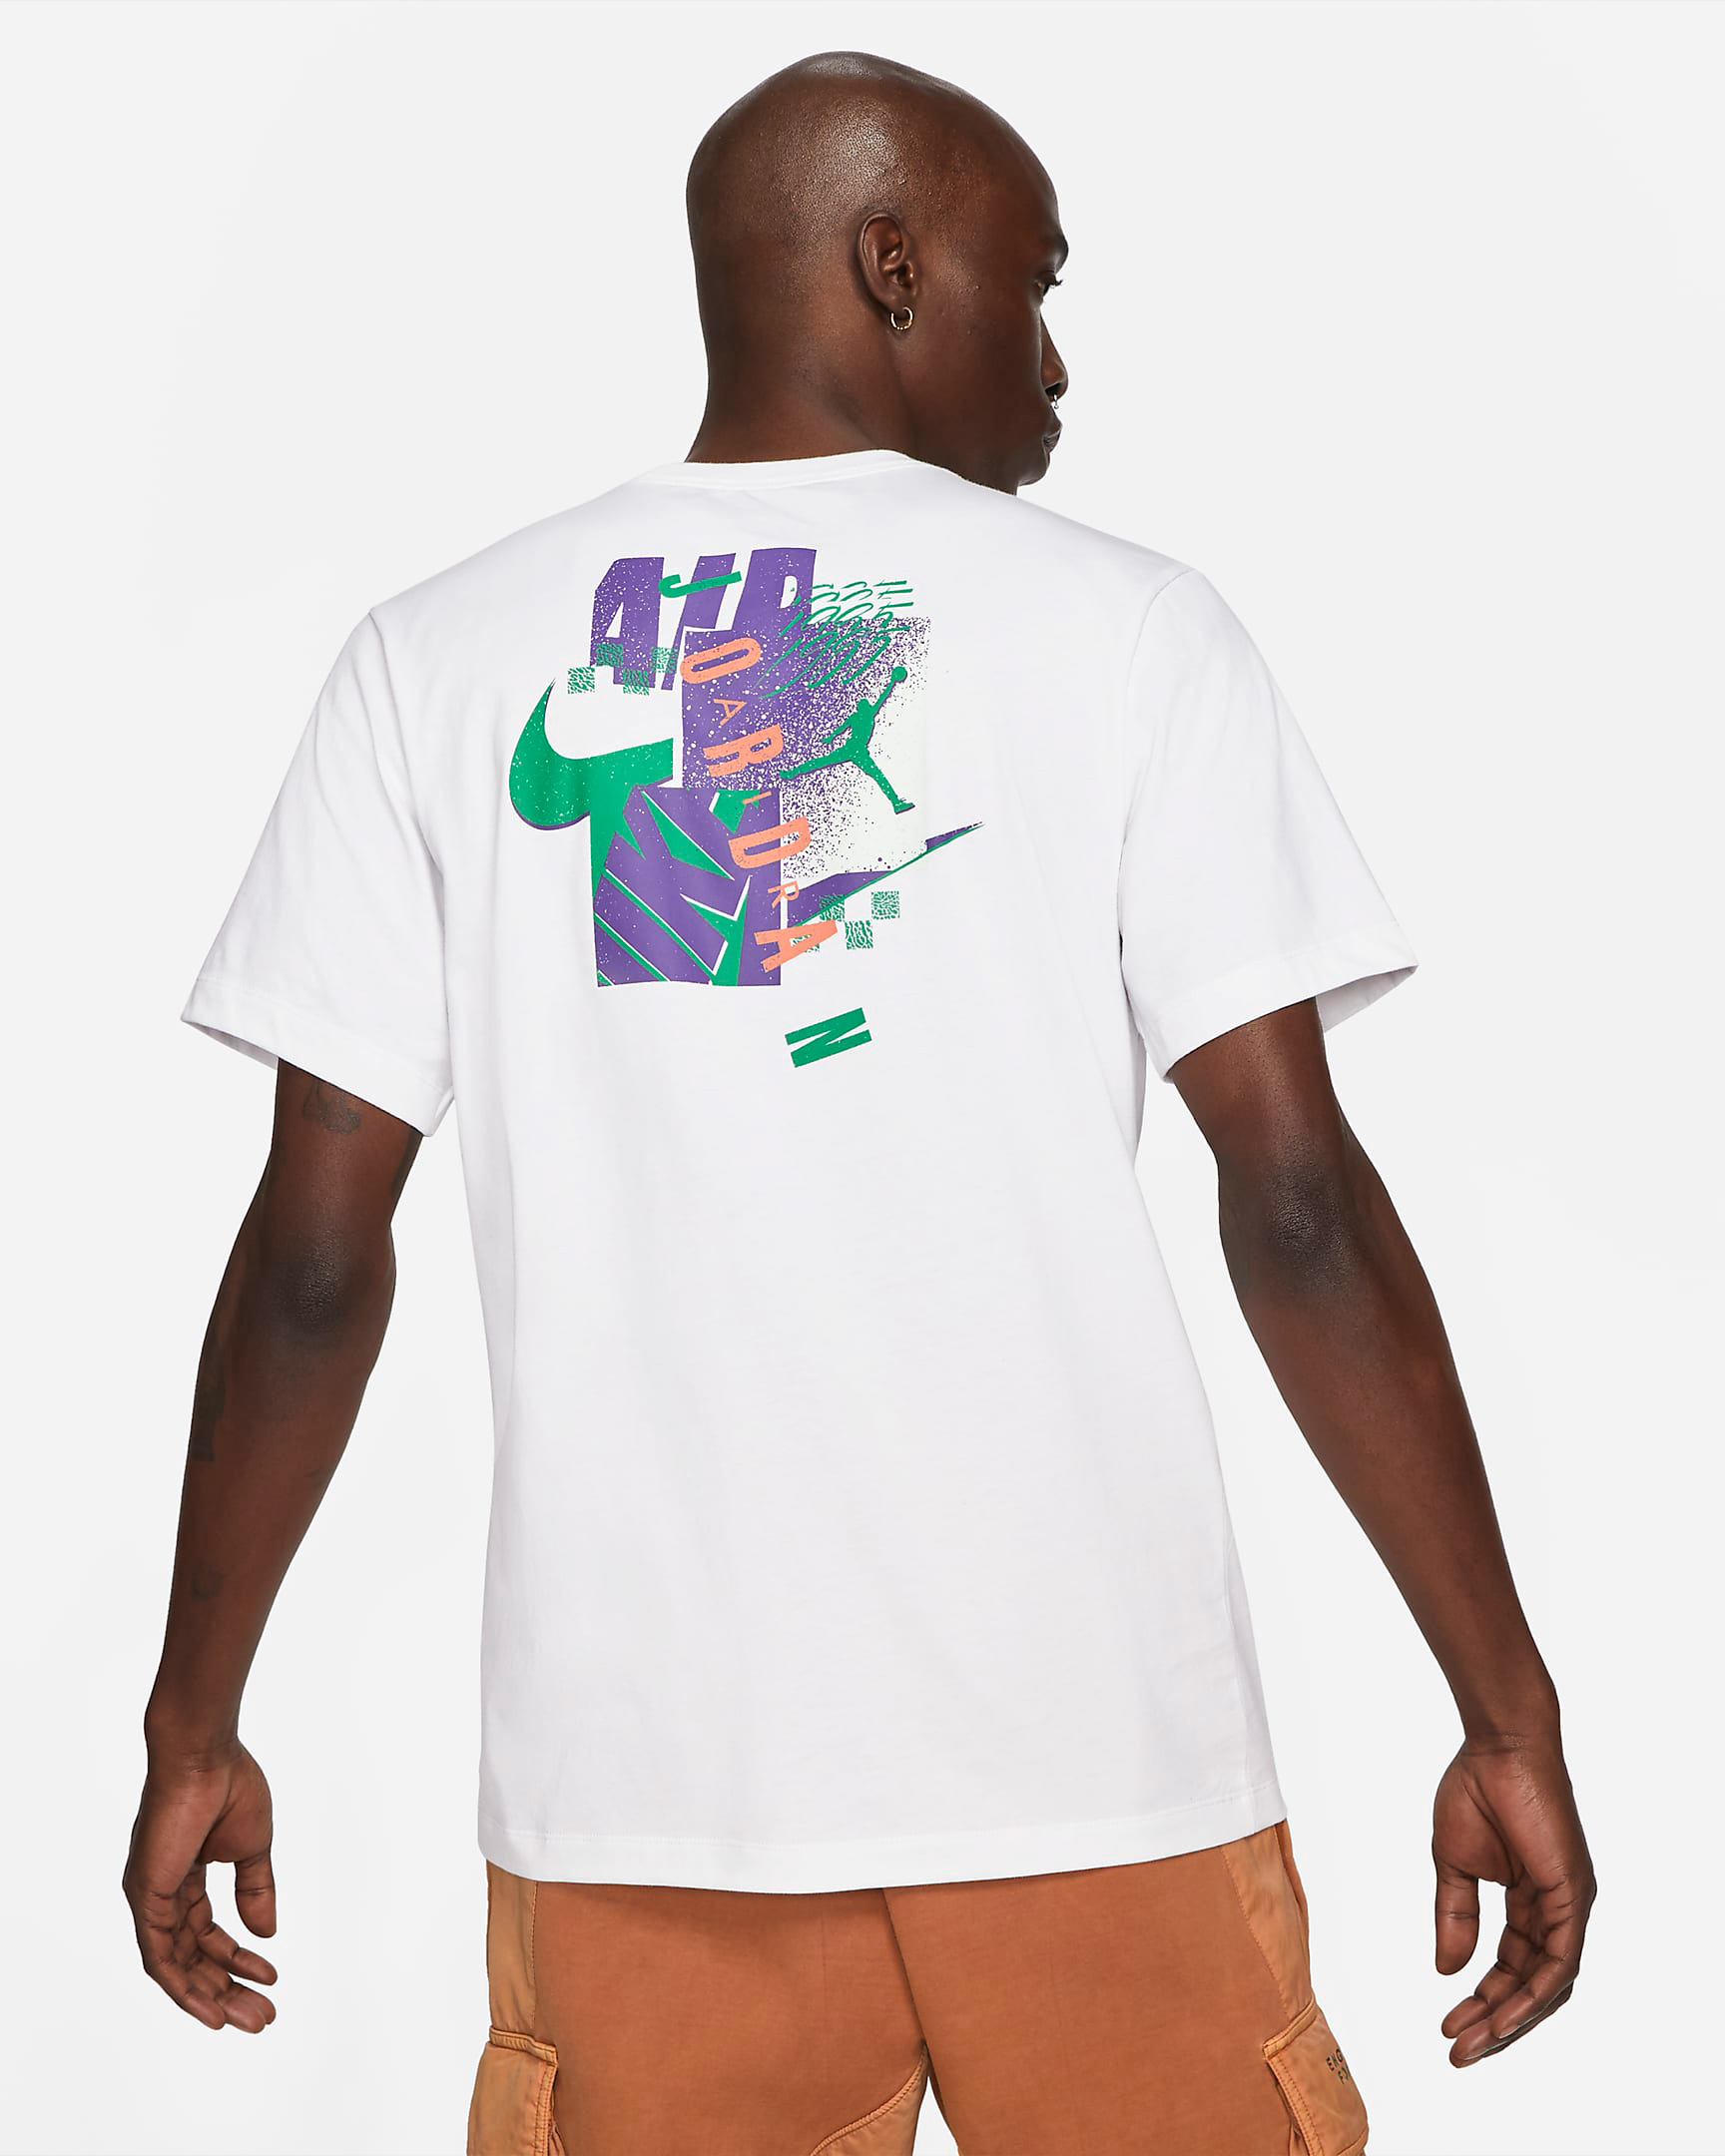 jordan-air-futura-shirt-white-purple-green-2